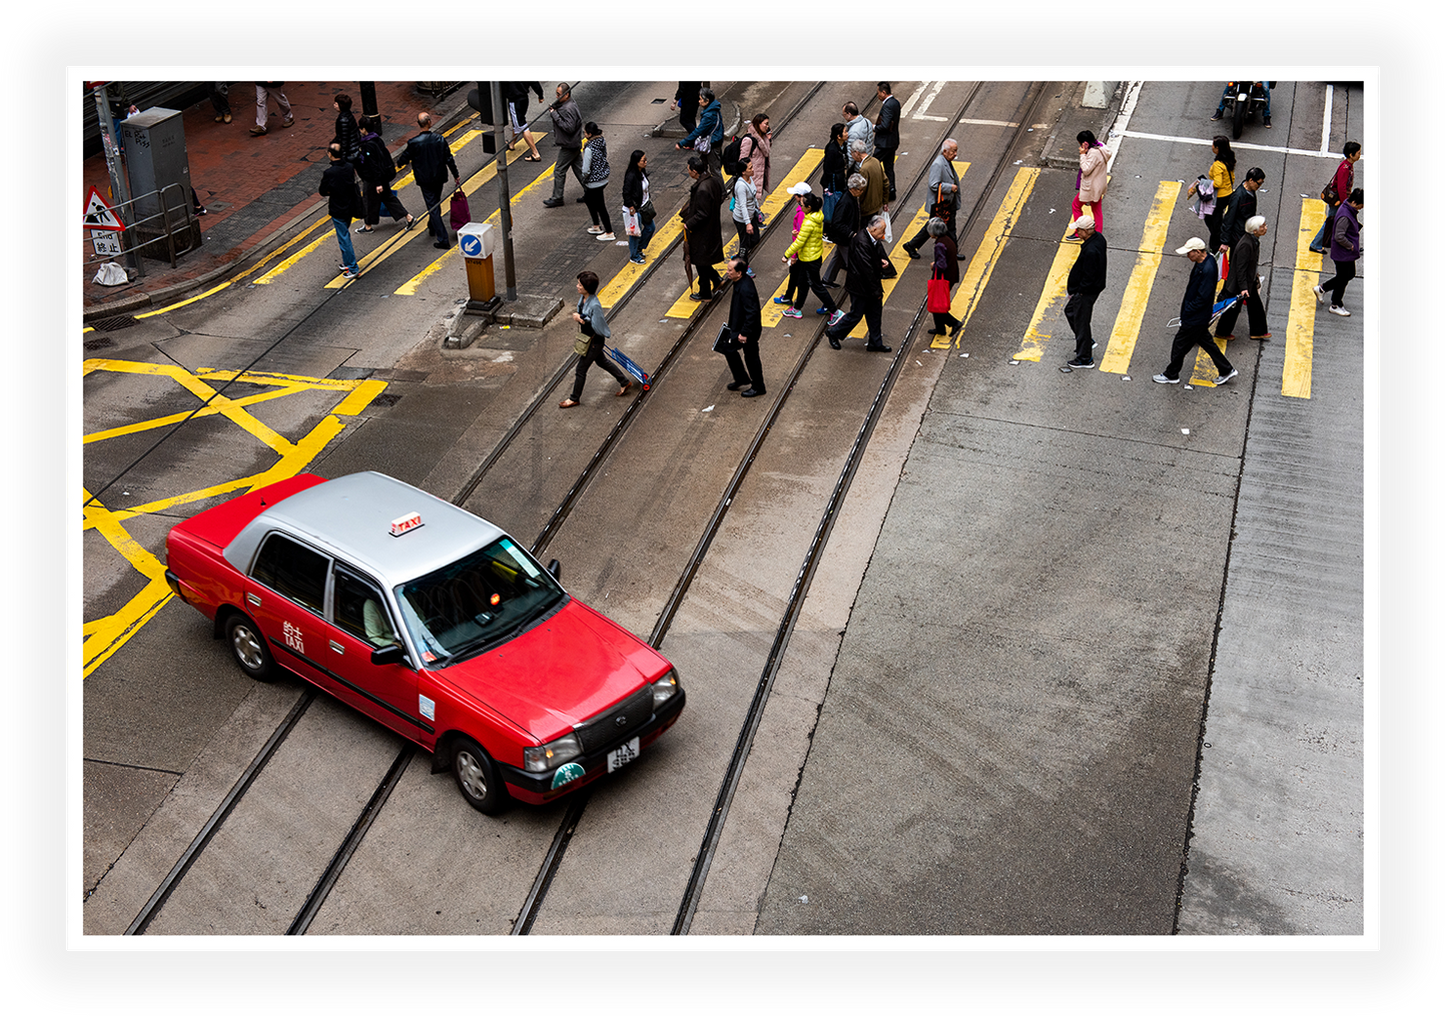 Hong Kong - Urban Motion: Hong Kong's Vibrant Taxi